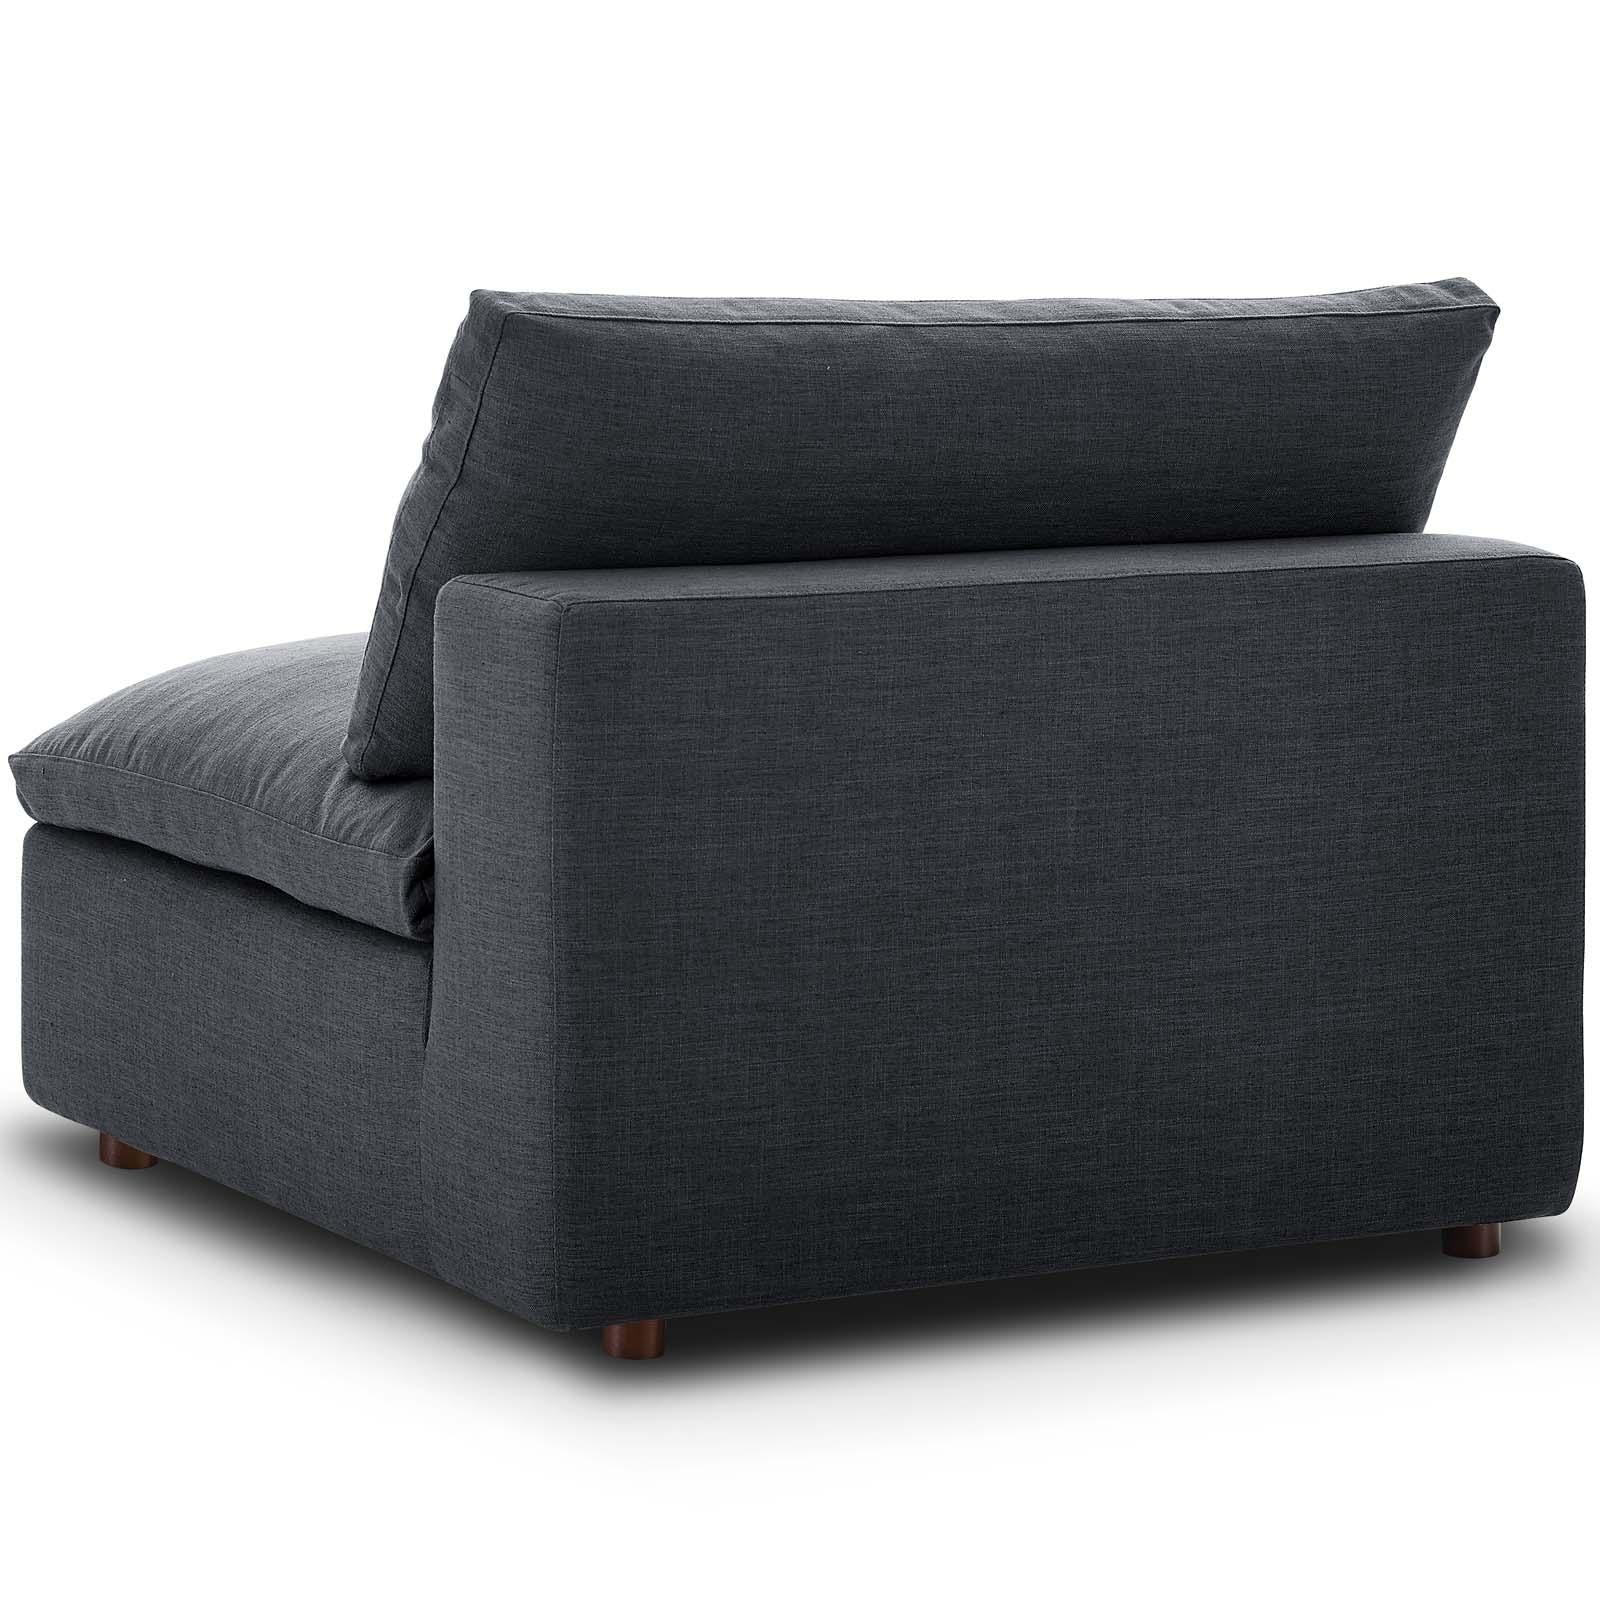 Modway Furniture Modern Commix Down Filled Overstuffed 6 Piece Sectional Sofa Set - EEI-3361